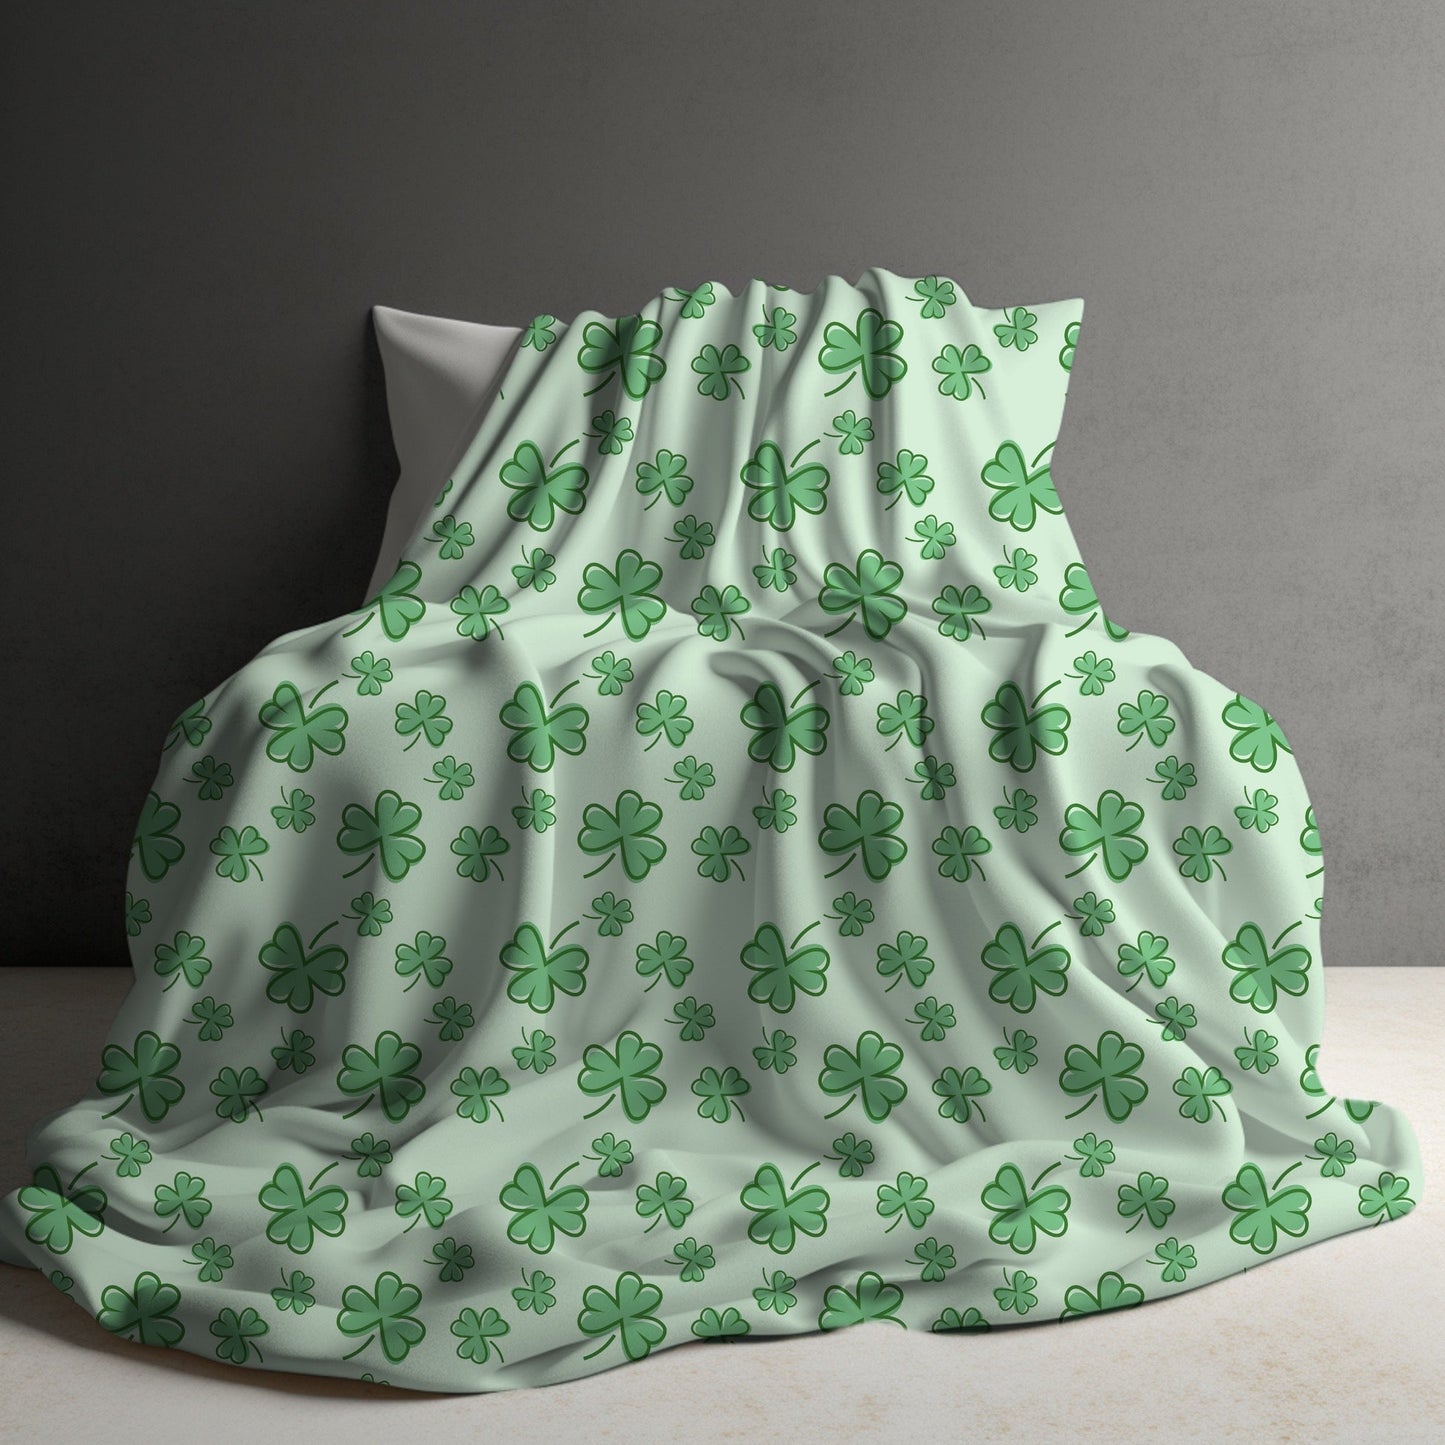 Blanket - St. Patrick’s Day - Shamrocks On Green